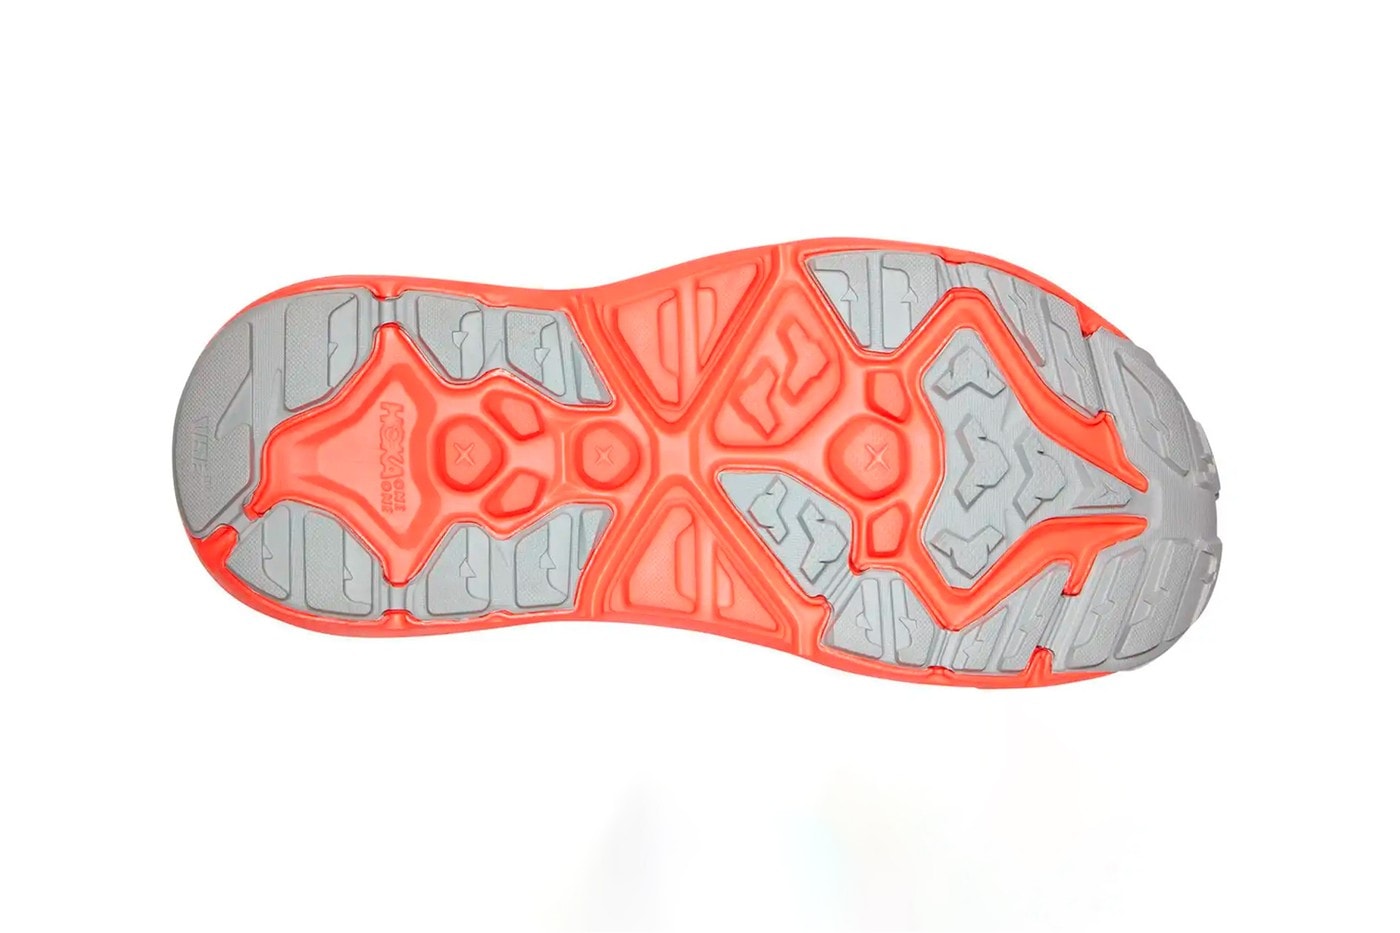 輕巧舒適 − HOKA ONE ONE 正式推出全新 Hopara 涼鞋鞋型